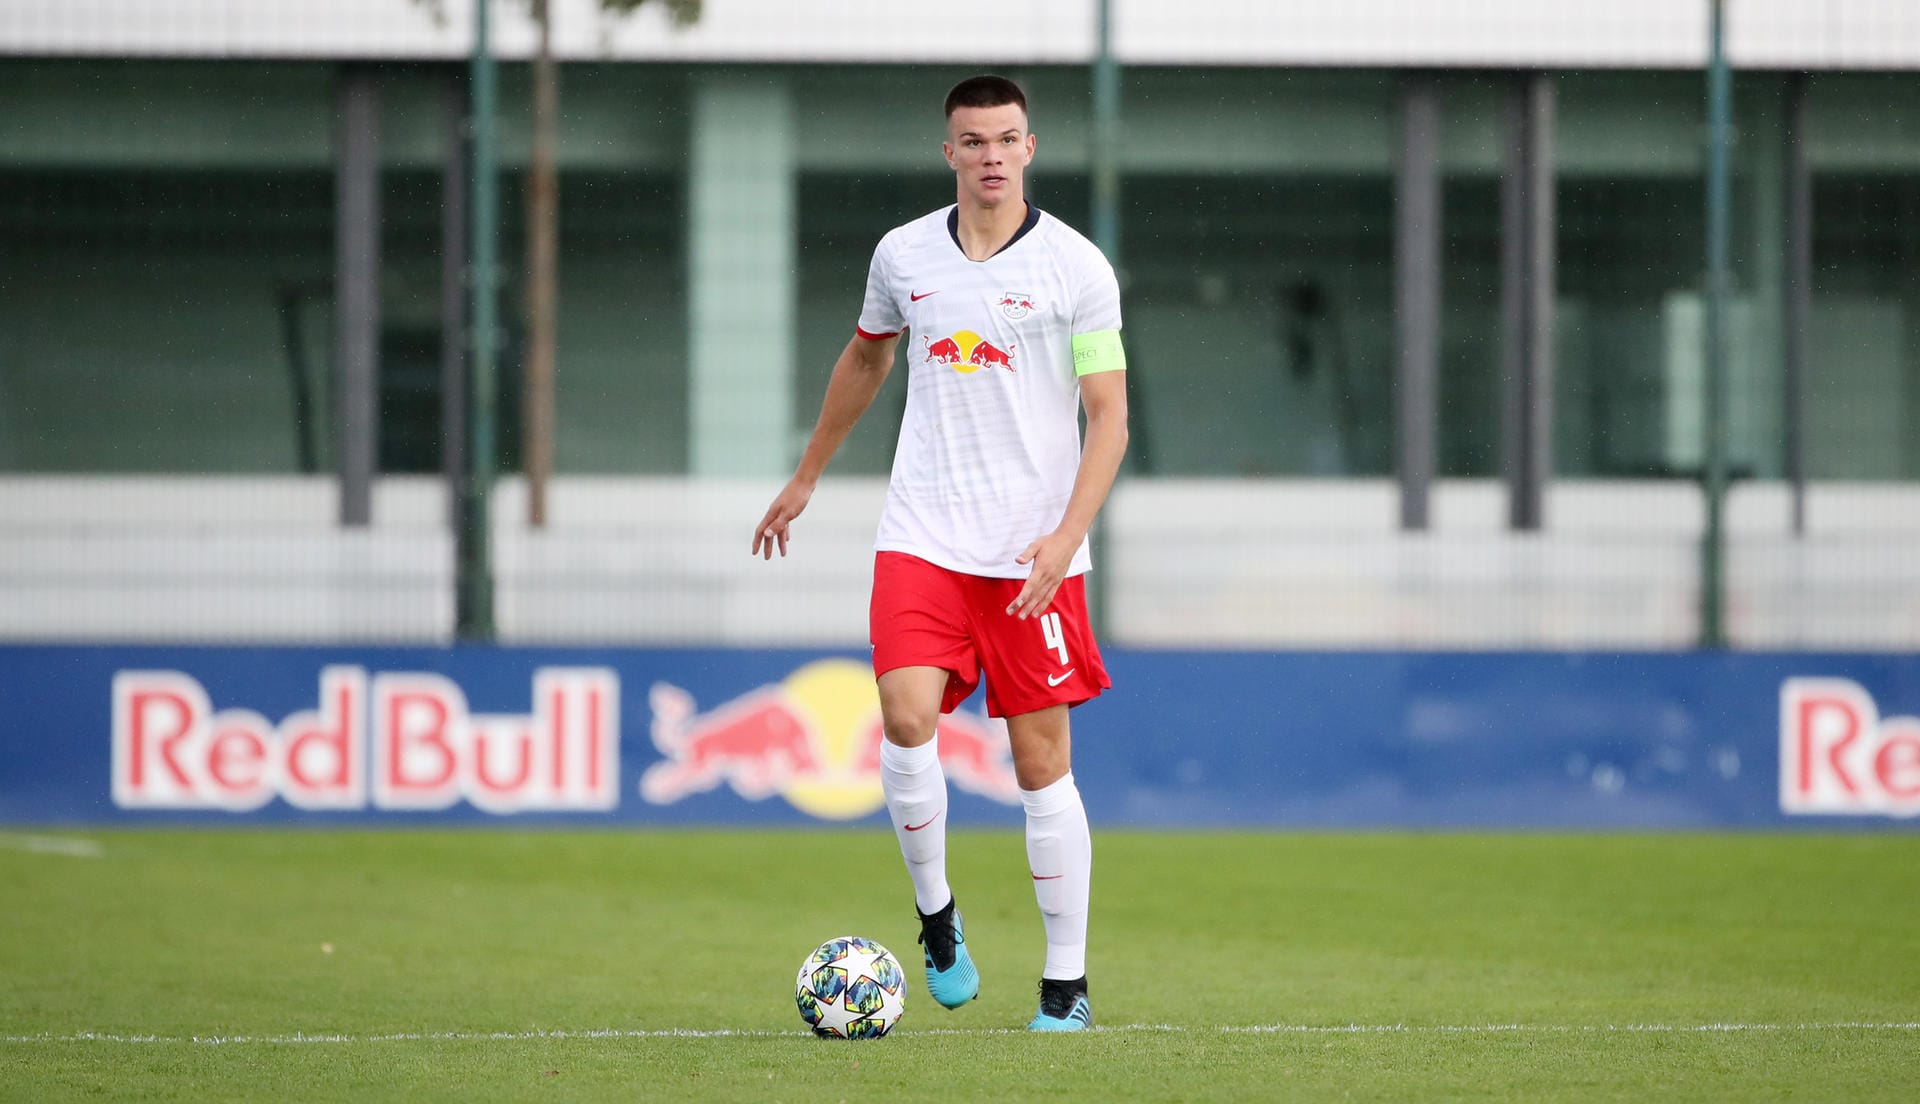 Frederik Jäkel (18, RB Leipzig): Der Innenverteidiger ist Kapitän des Leipziger A-Junioren-Bundesligateams und wichtiger Bestandteil der DFB-U19-Auswahl. Auch schon mit Profivertrag ausgestattet, reiste er im Sommer mit ins Trainingslager der ersten Mannschaft.